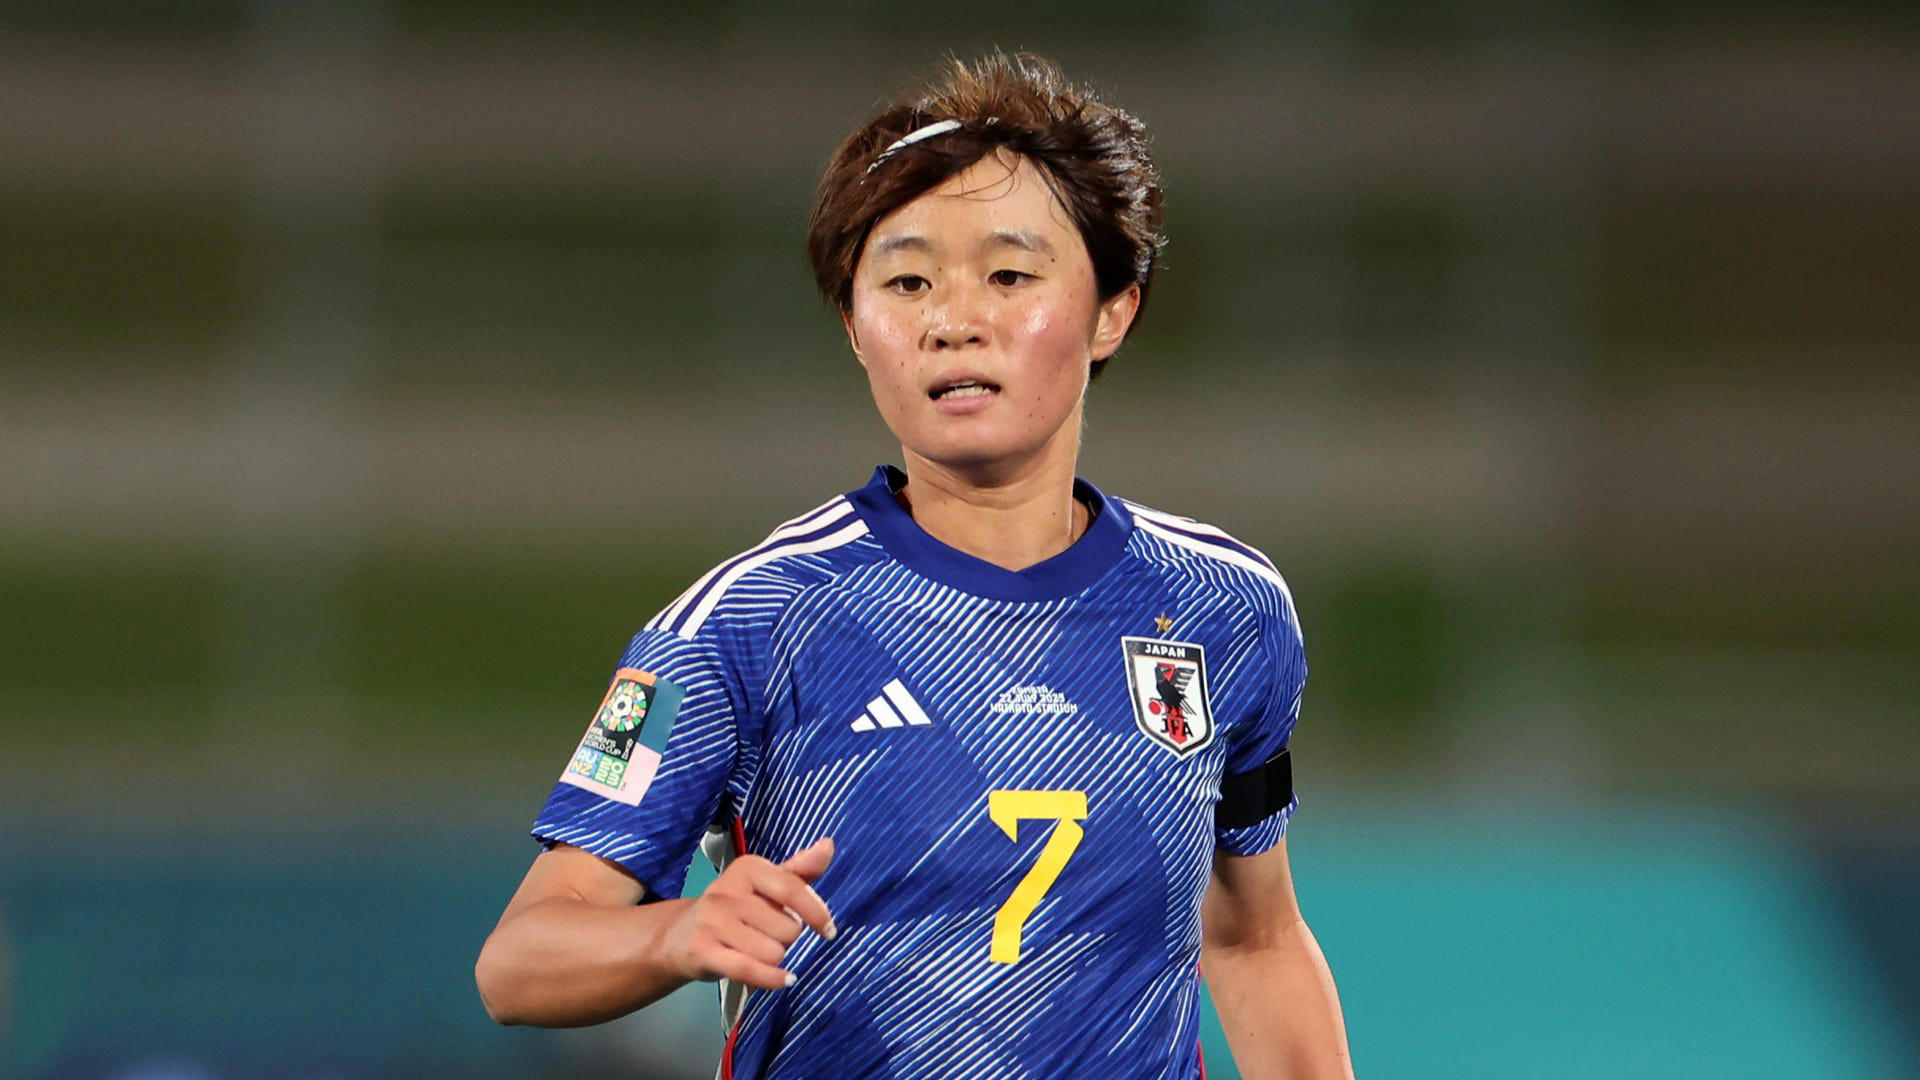 得点王 なでしこジャパン 宮澤ひなた アウェイ ユニフォーム サッカー 日本代表リーグサッカー女子日本代表